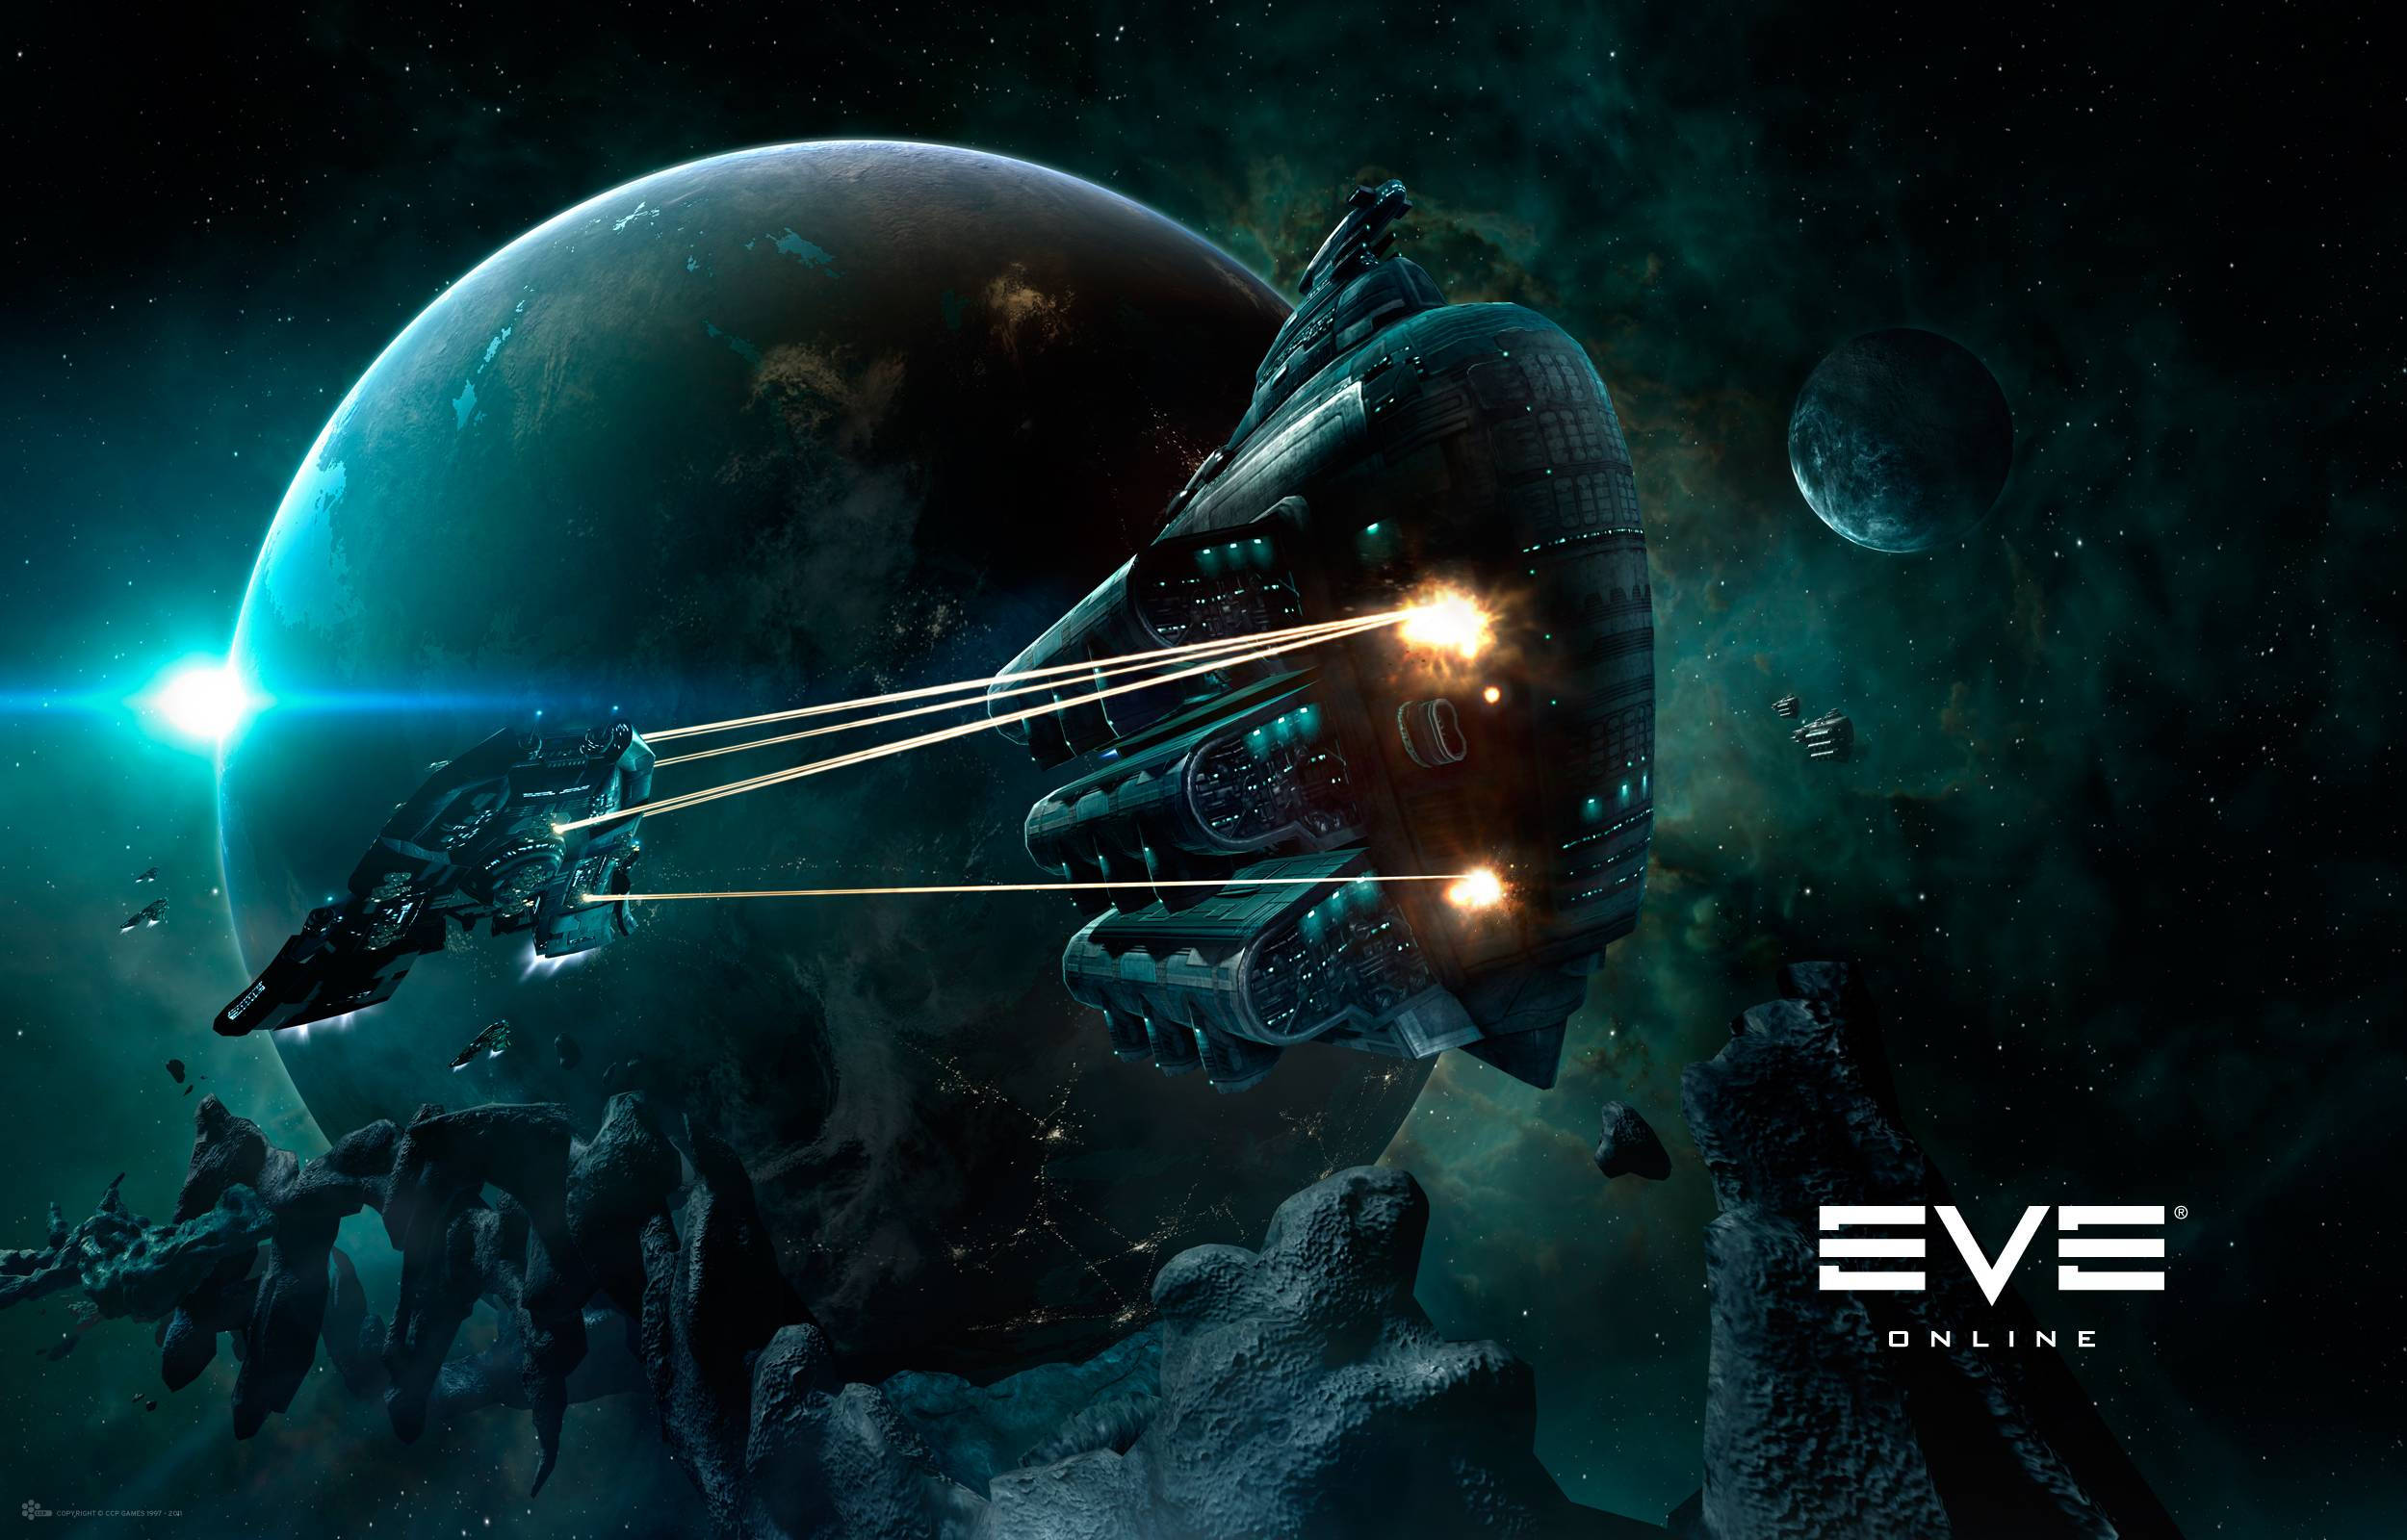 Eve Online Spacecraft Under Attack Wallpaper